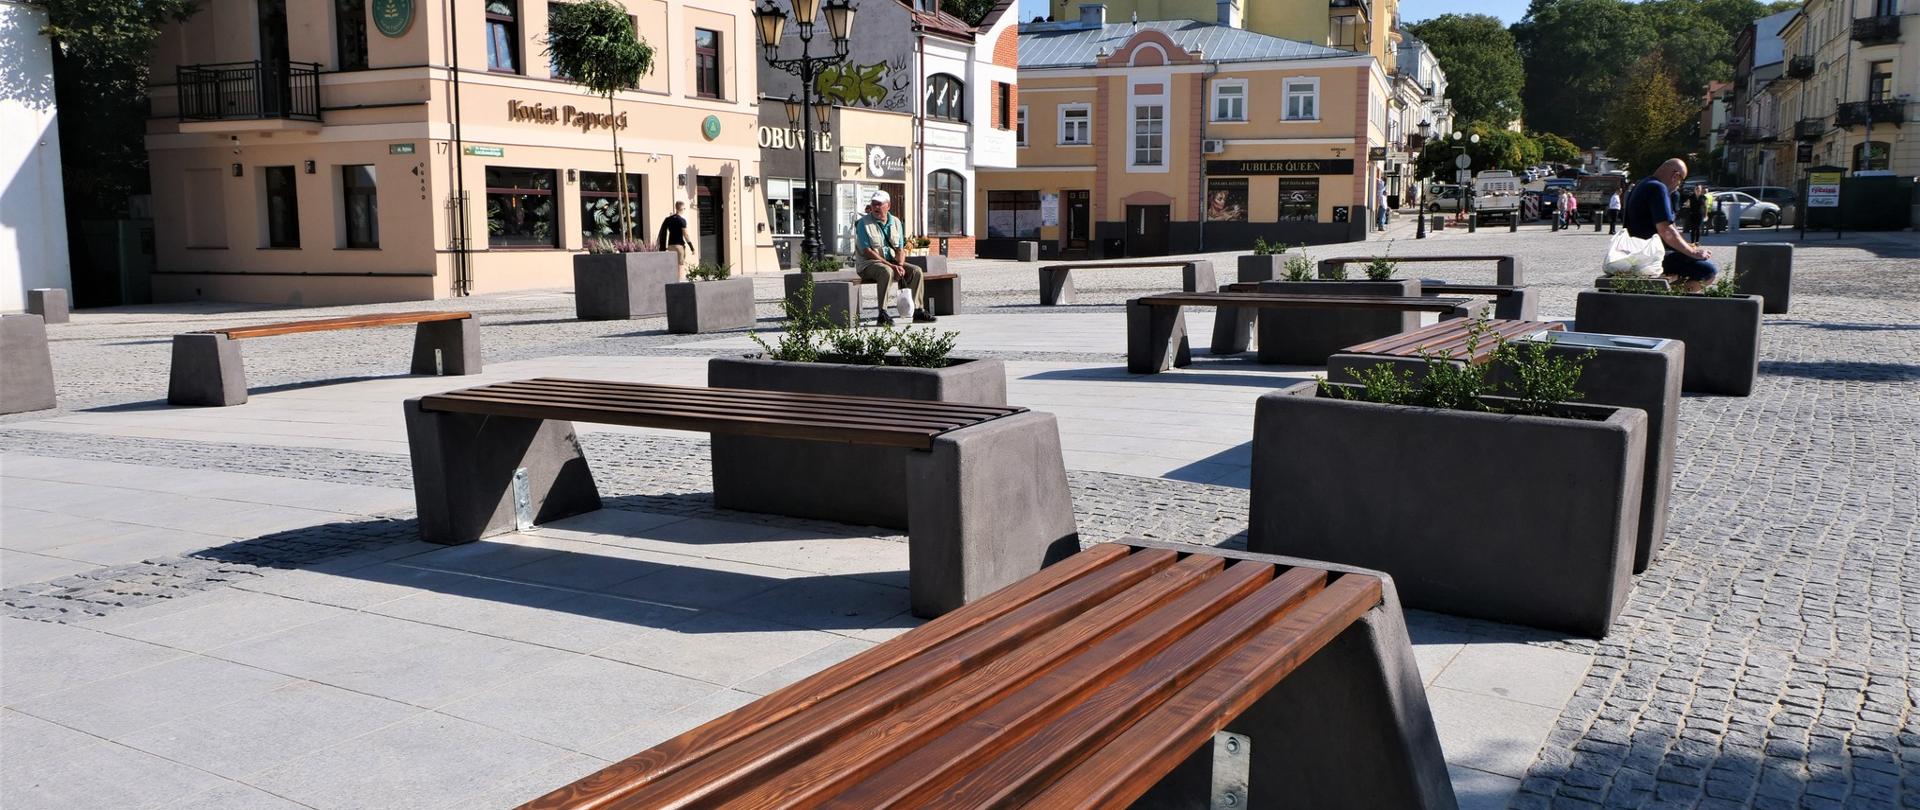 Zdjęcie przedstawia ławki ustawione na placu na zewnątrz